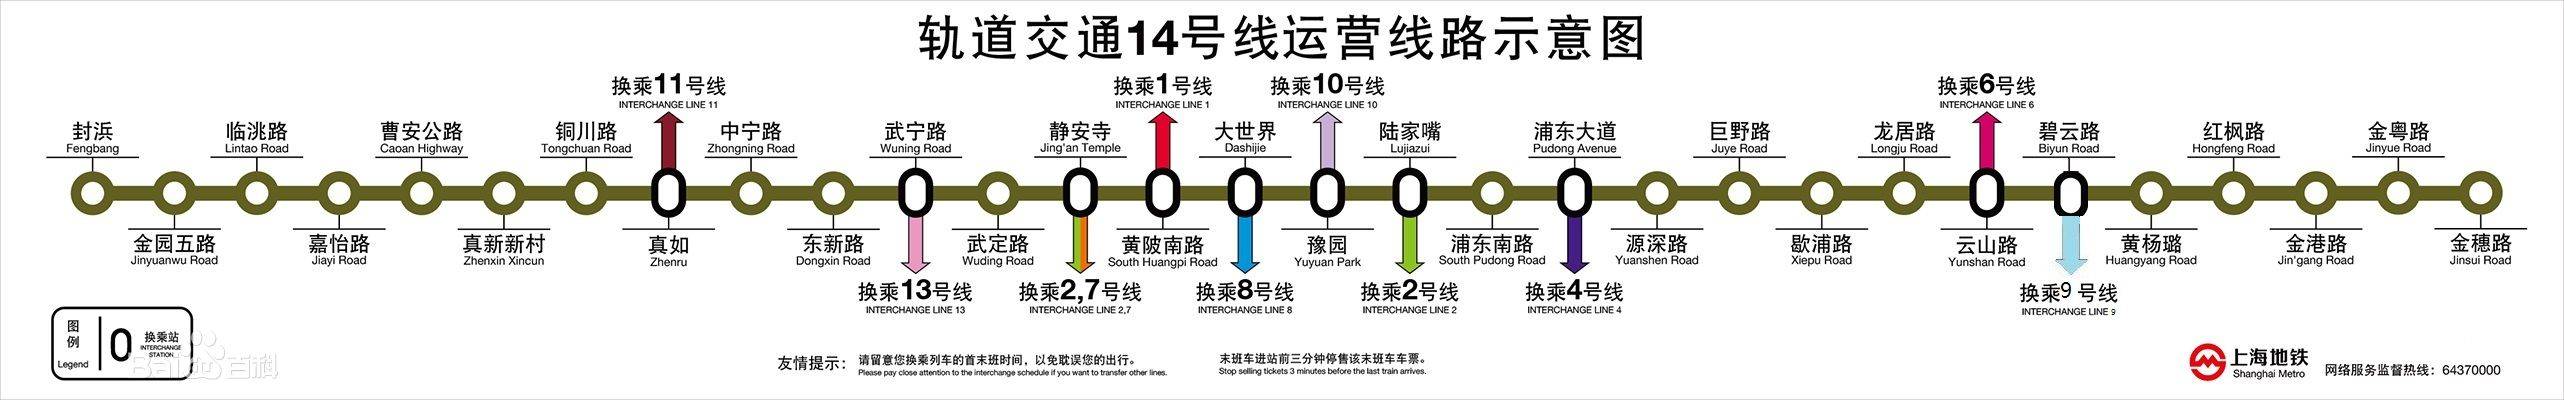 上海地铁14号线运行线路示意图 上海地铁14号线运行线路示意图 